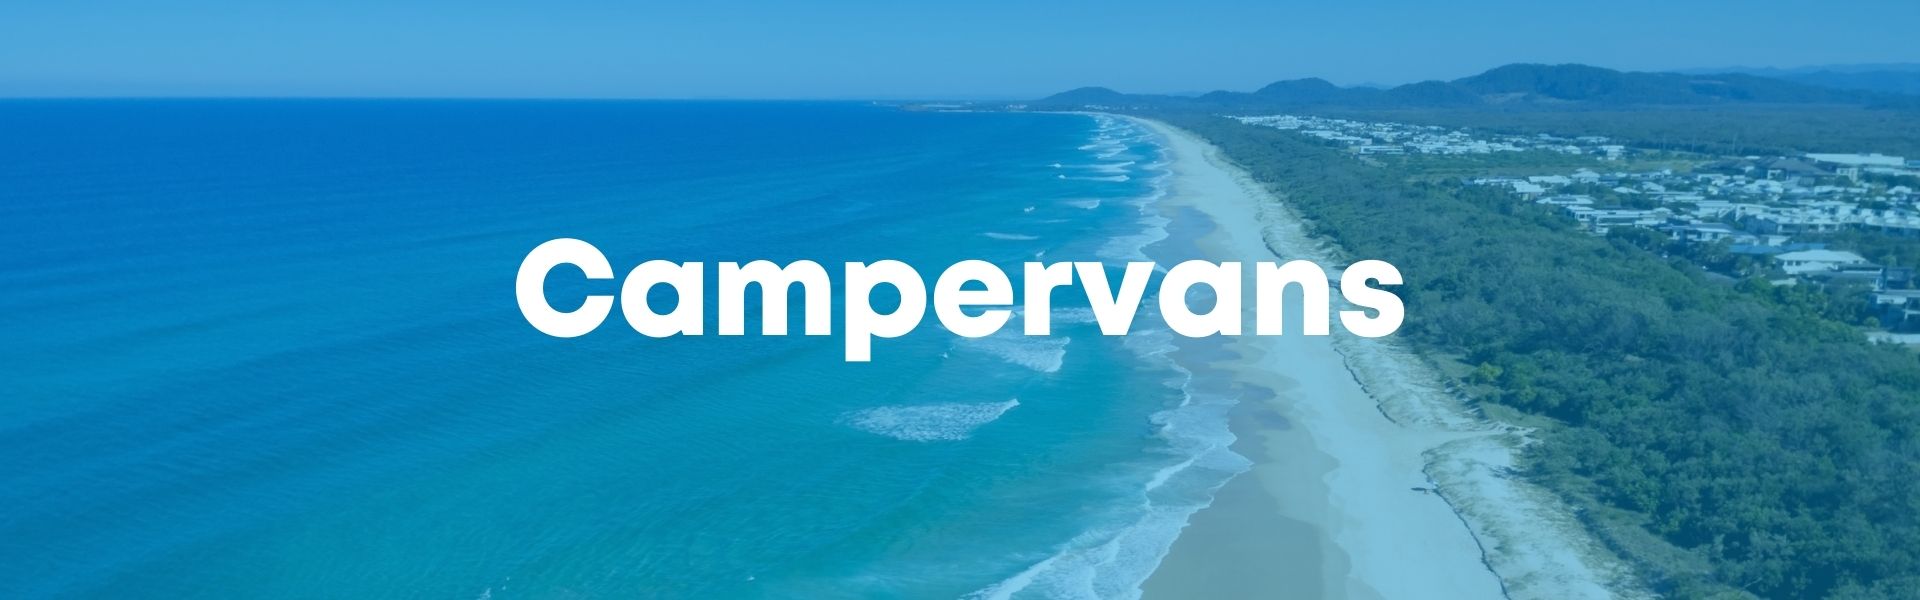 Campervans, Campervans for sale, Sydney RV range of campervans